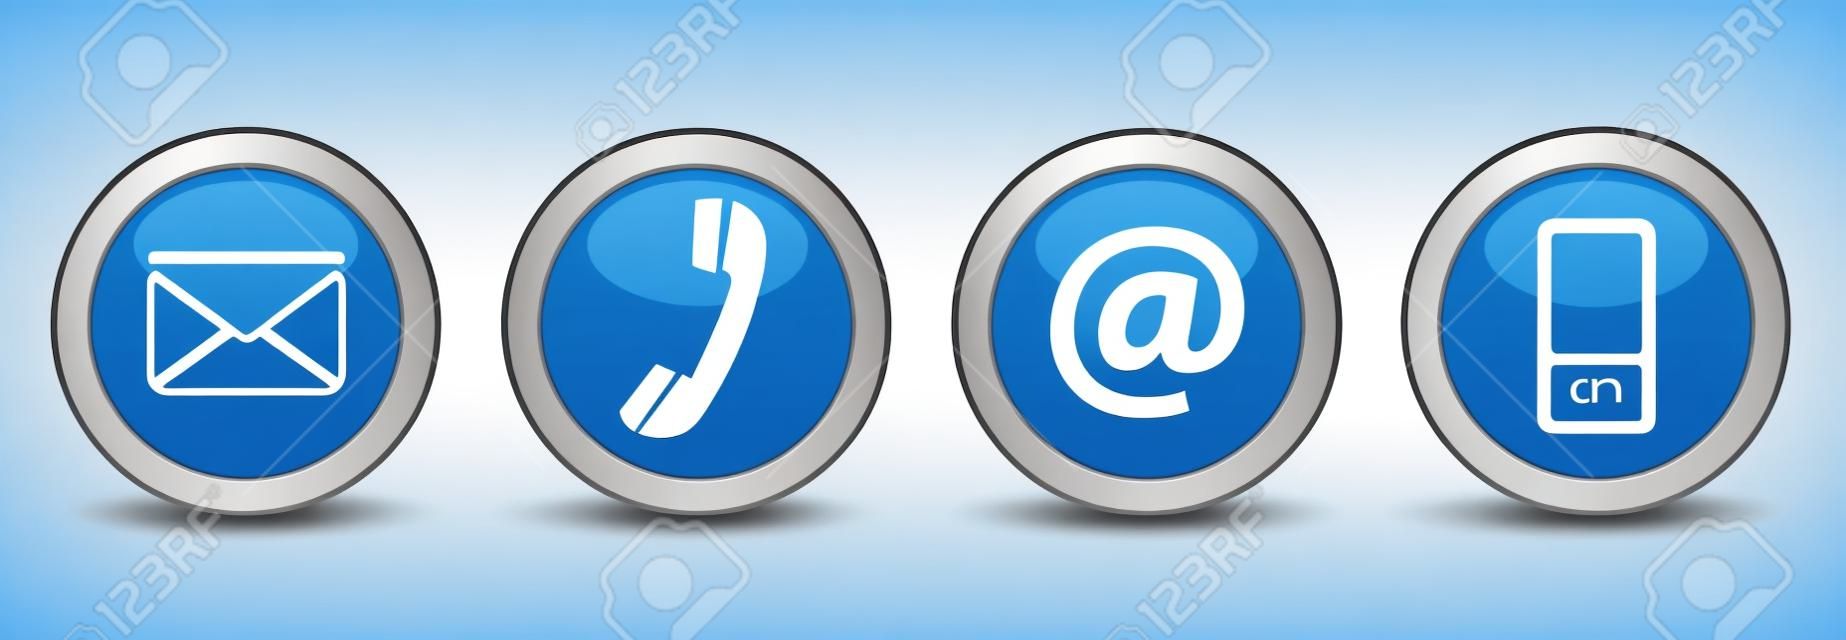 联系我们的网页按钮设置在电话和手机图标上的蓝色银色徽章矢量EPS 10插图白色背景隔离